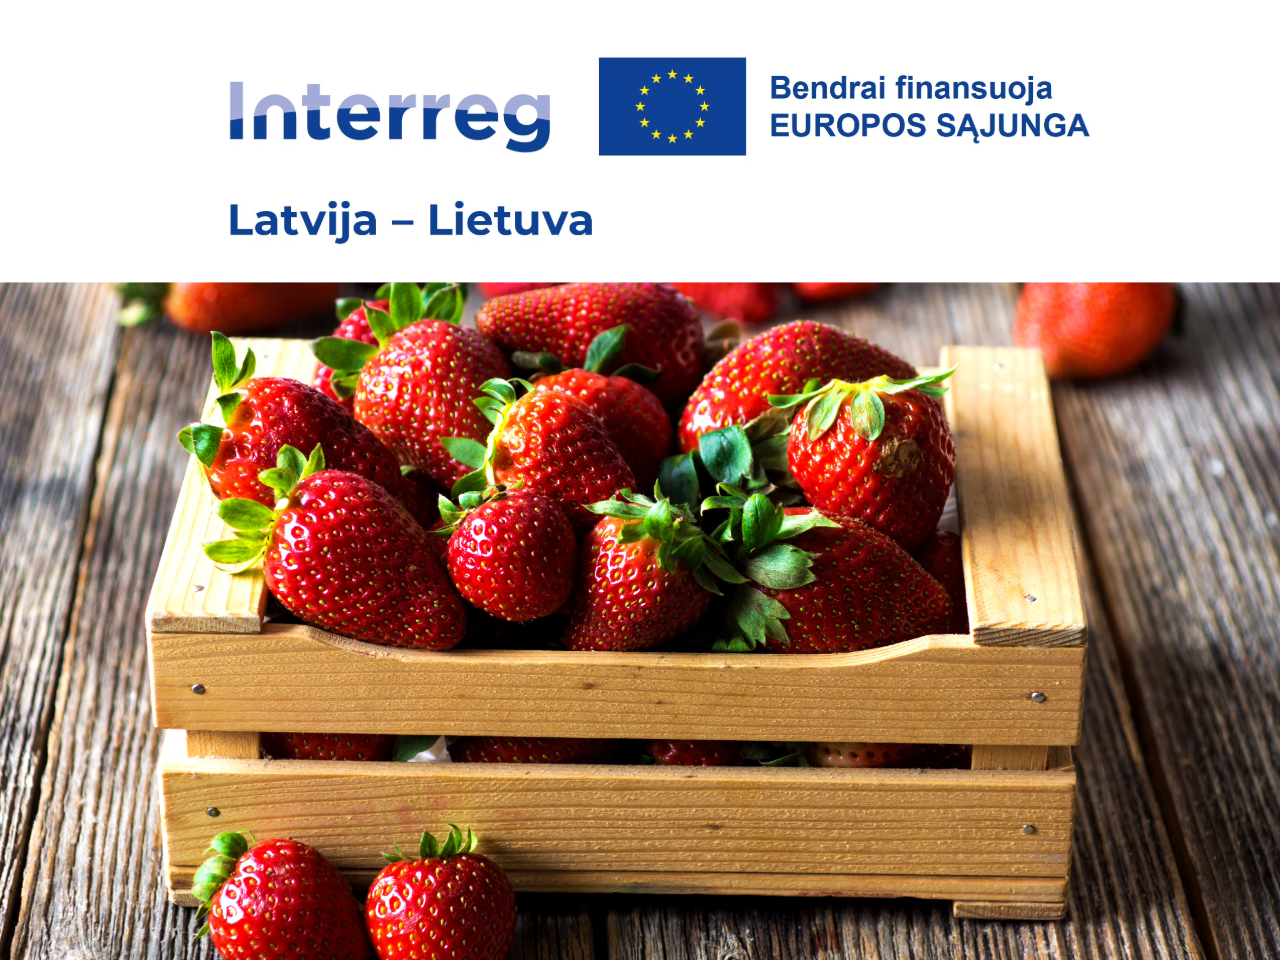 „Socialinio verslumo ekosistemos tobulinimas Žiemgaloje ir Šiaurės Lietuvoje“ (Improving the social entrepreneurship ecosystem in Zemgale and Northern Lithuania/ RE:IMPACT)